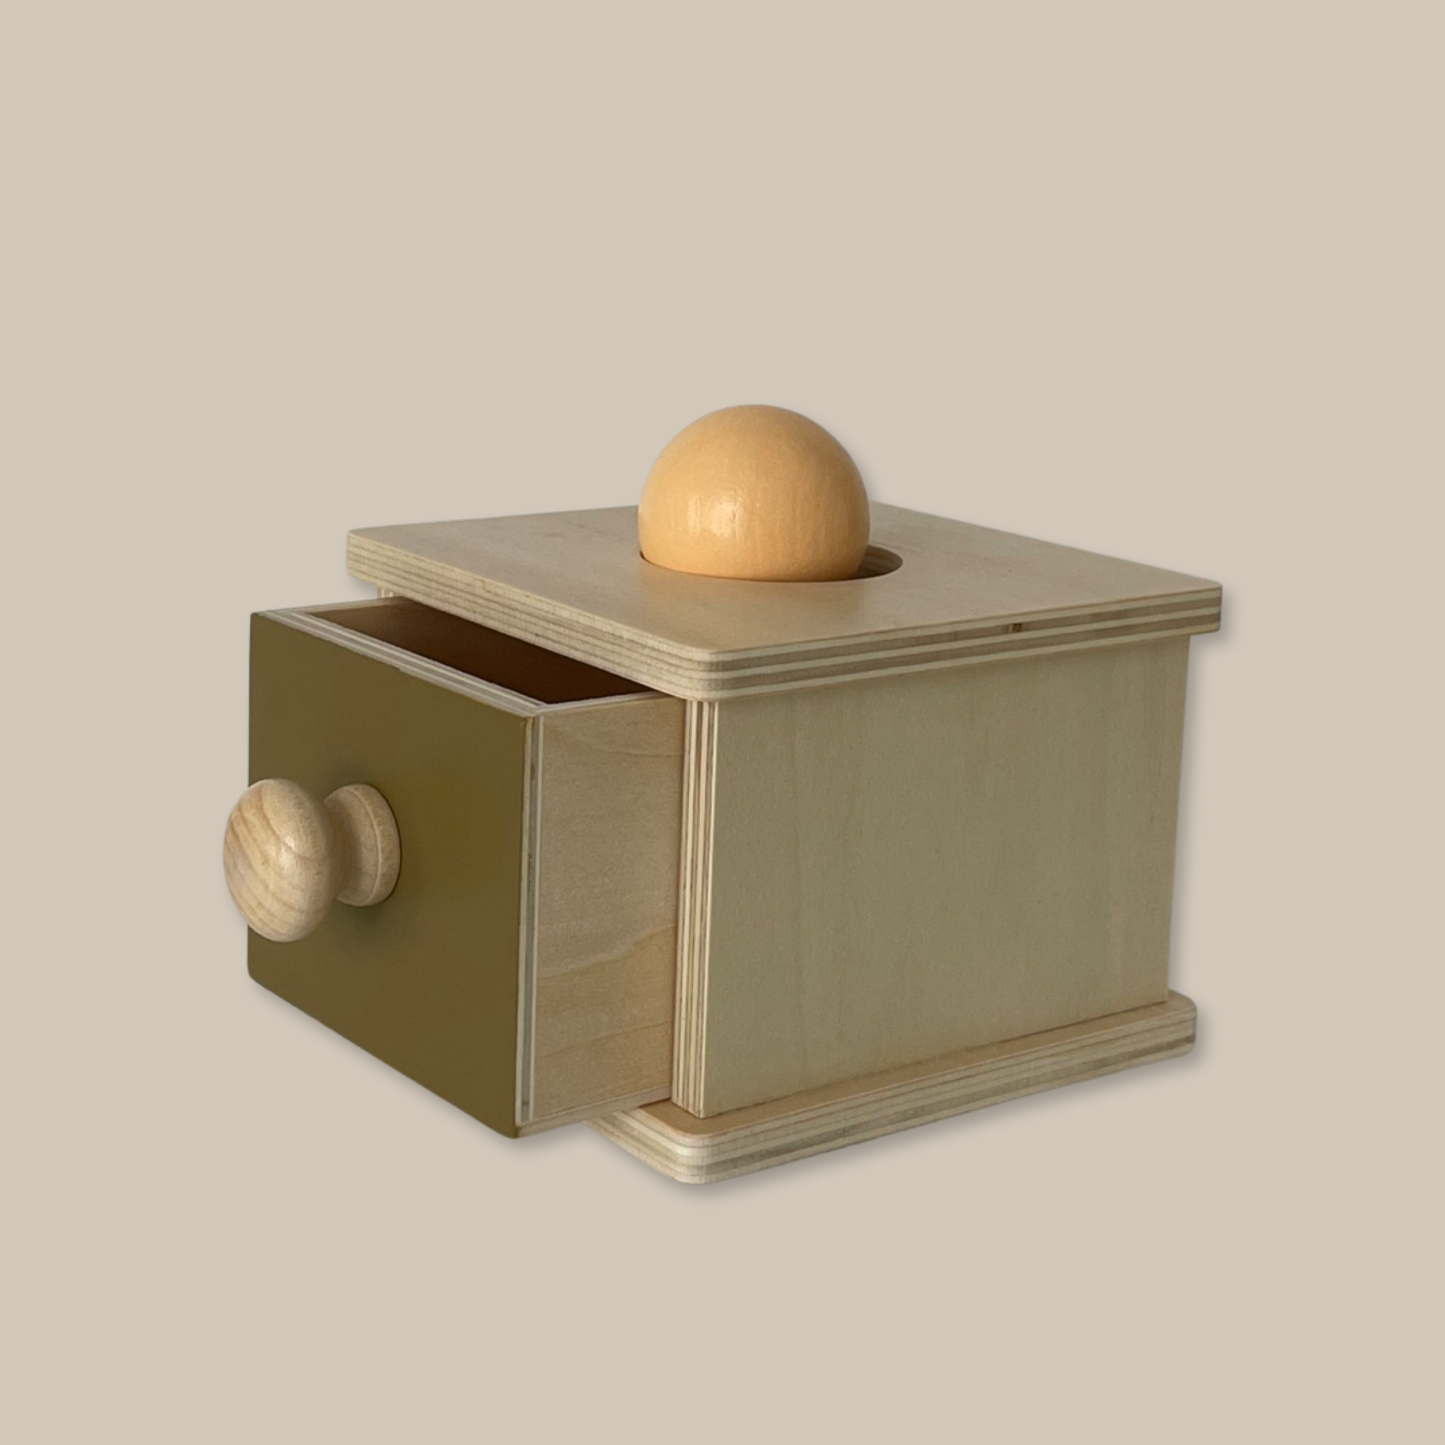 Montessori Box & Ball Drop mini minimalists